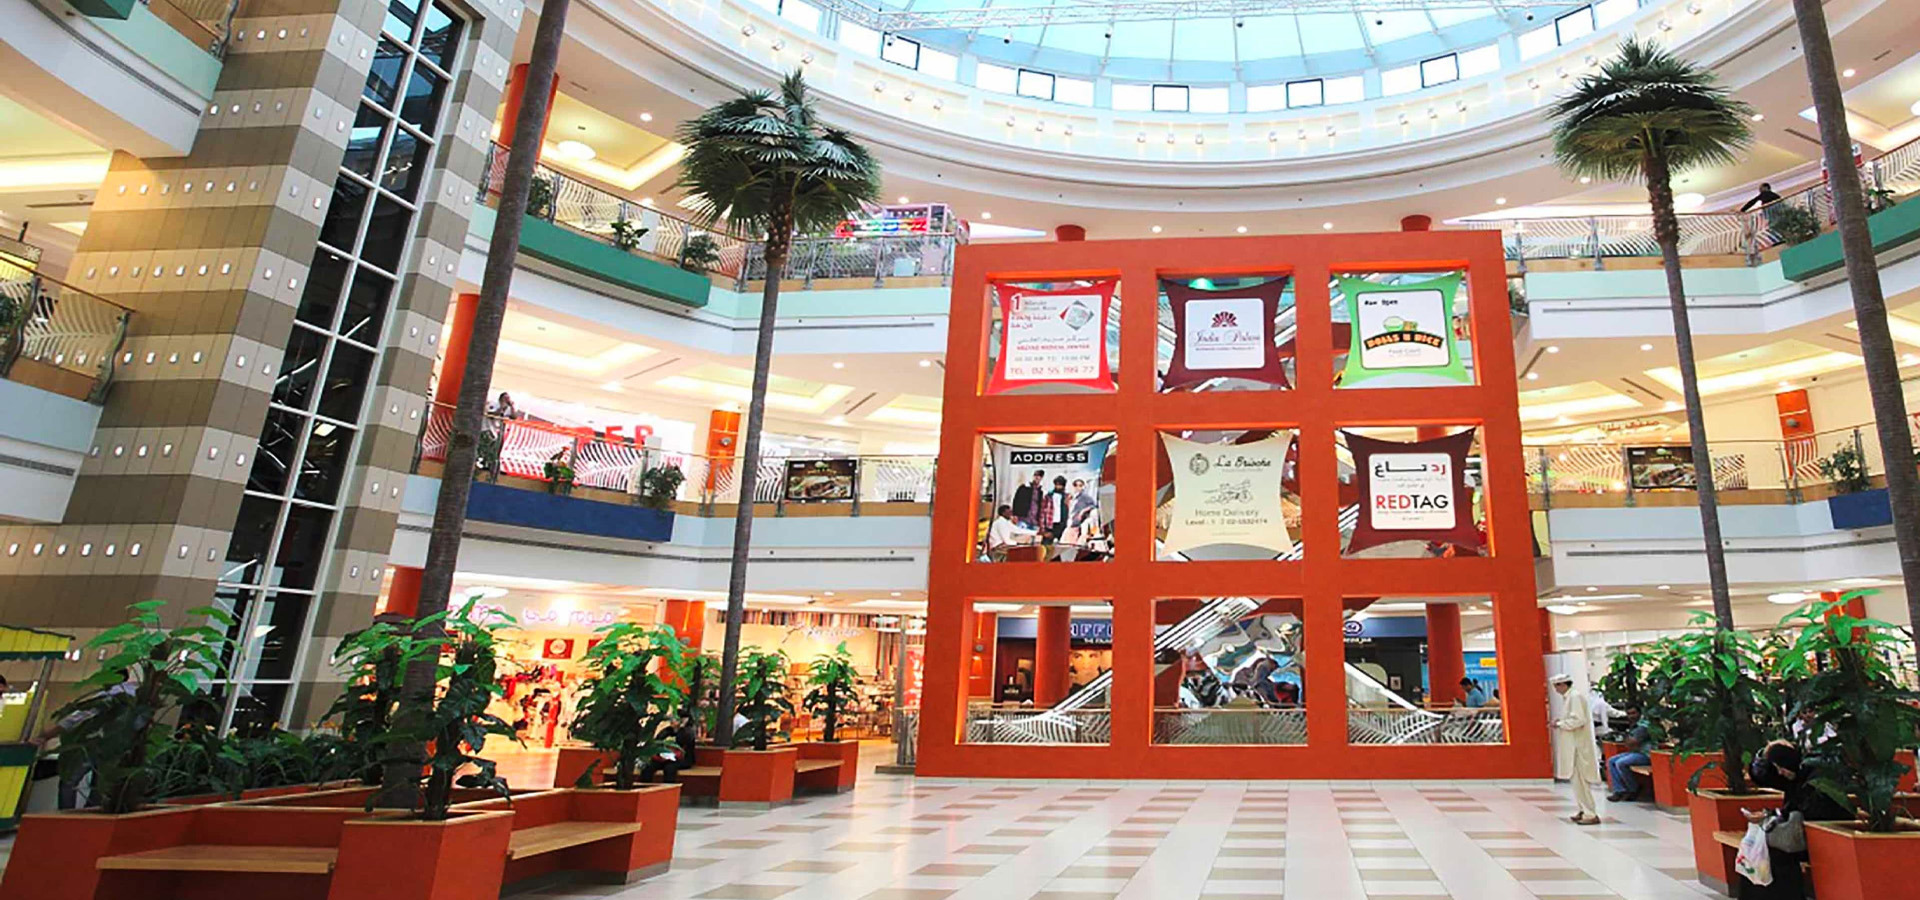 Mazyad Mall , UAE